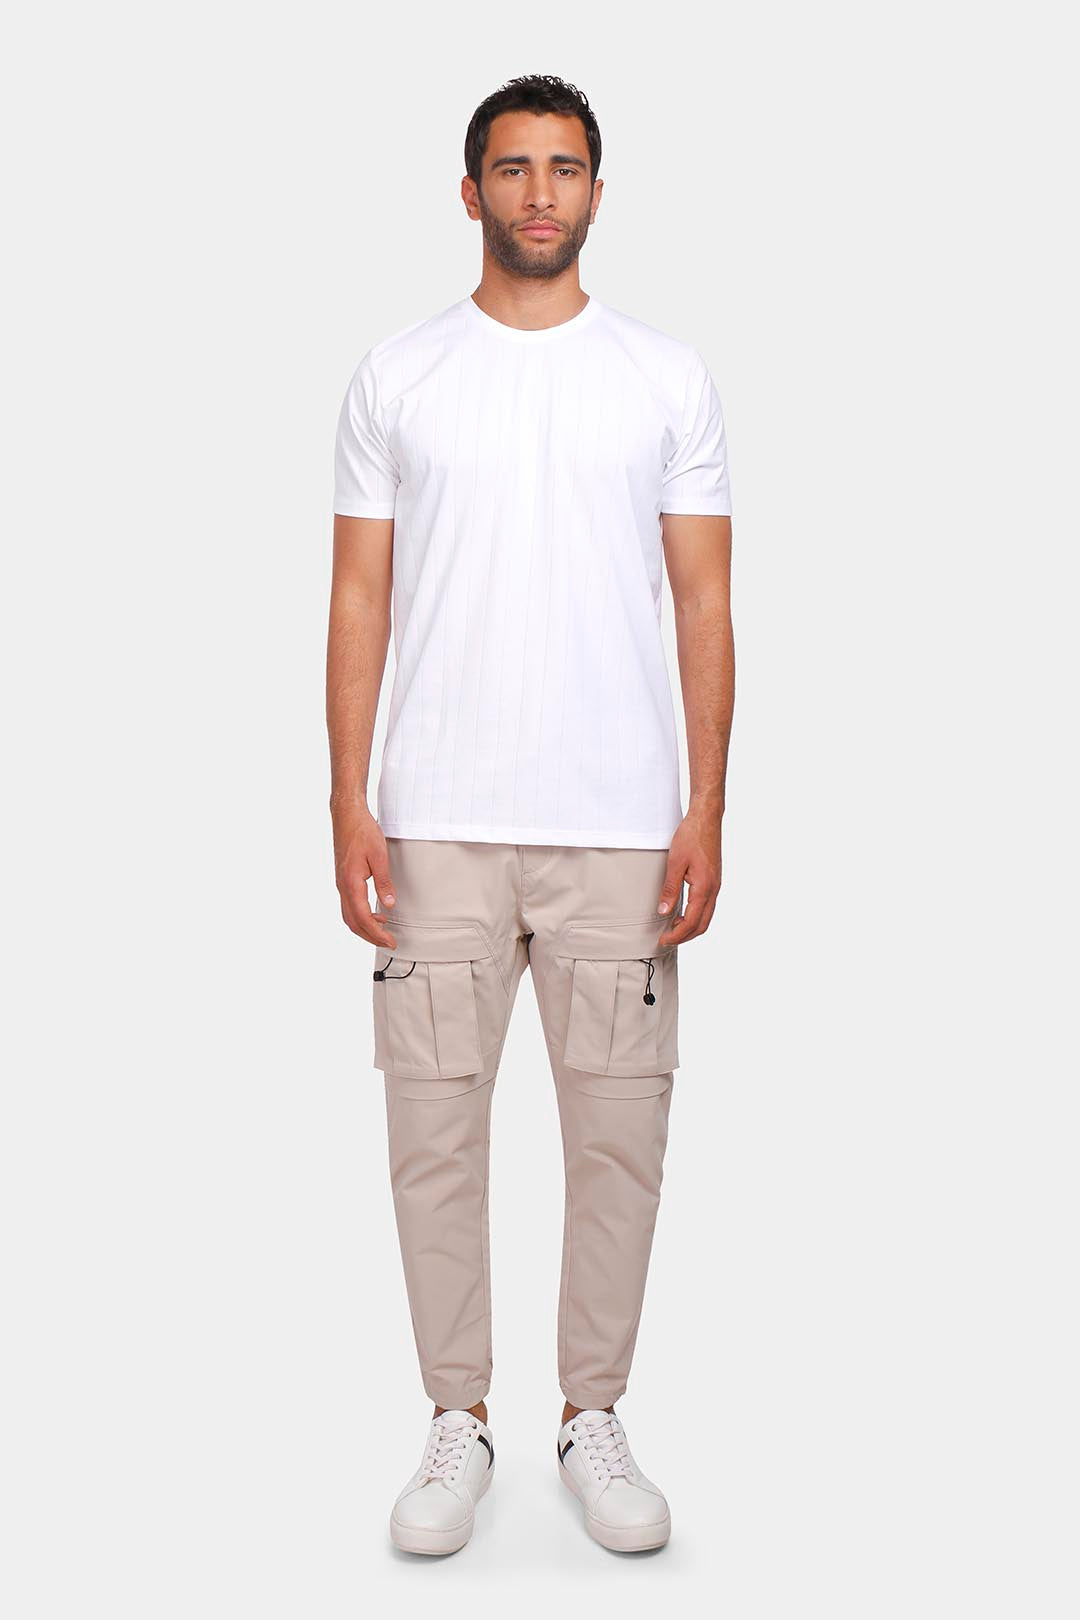 t-shirt white 002/S24/M202220